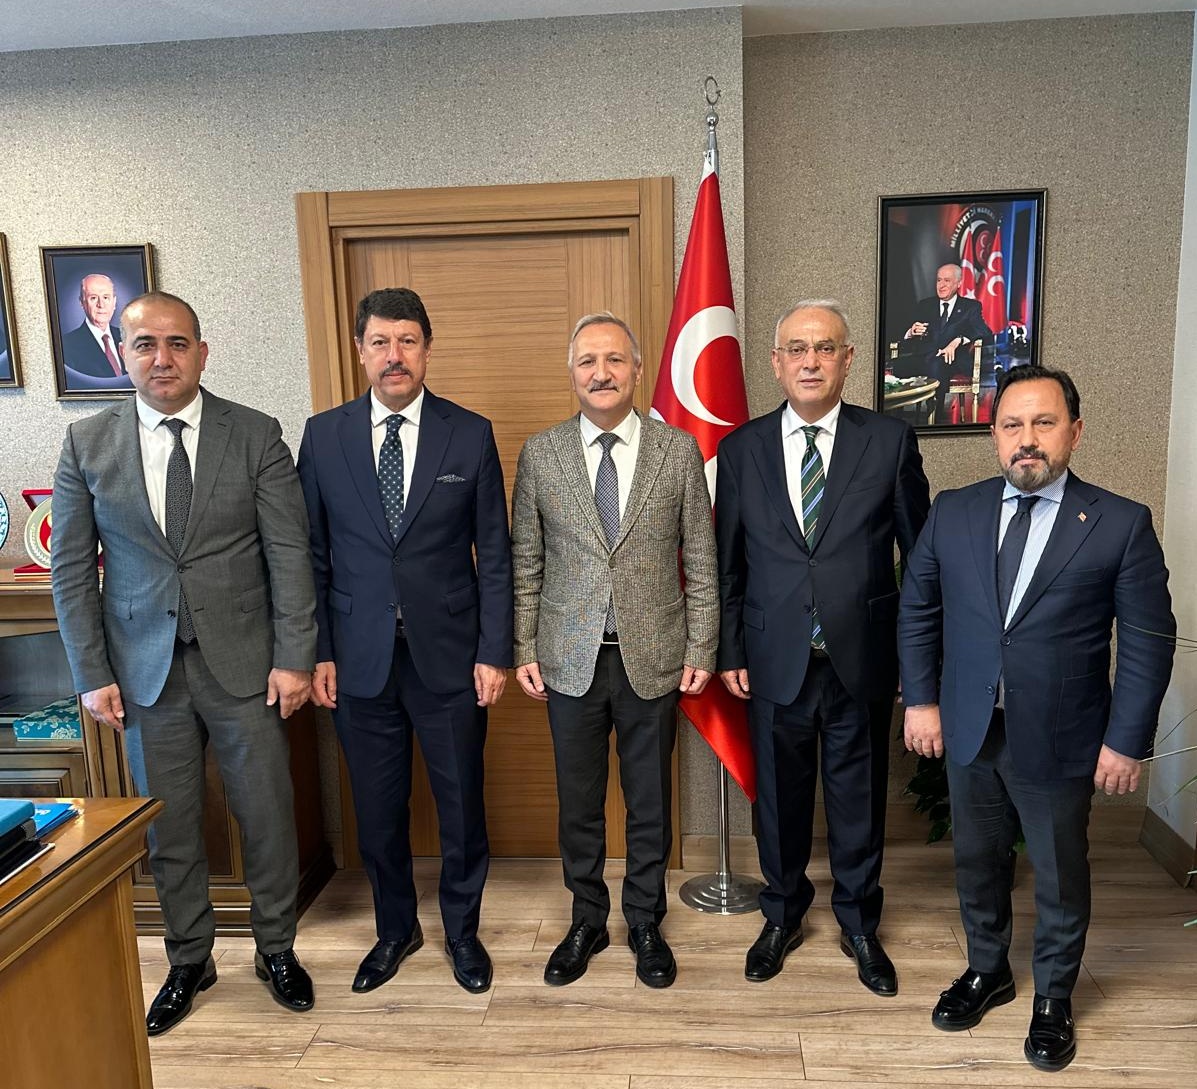 Aile, Kadın ve Sosyal Hizmet Politikalarından Sorumlu Genel Başkan Yardımcımız Sn. Ahmet Selim Yurdakul'a ziyarette bulunarak yeni görevinden ötürü tebrik ettik, hayır ve başarı dileklerimizi paylaştık.